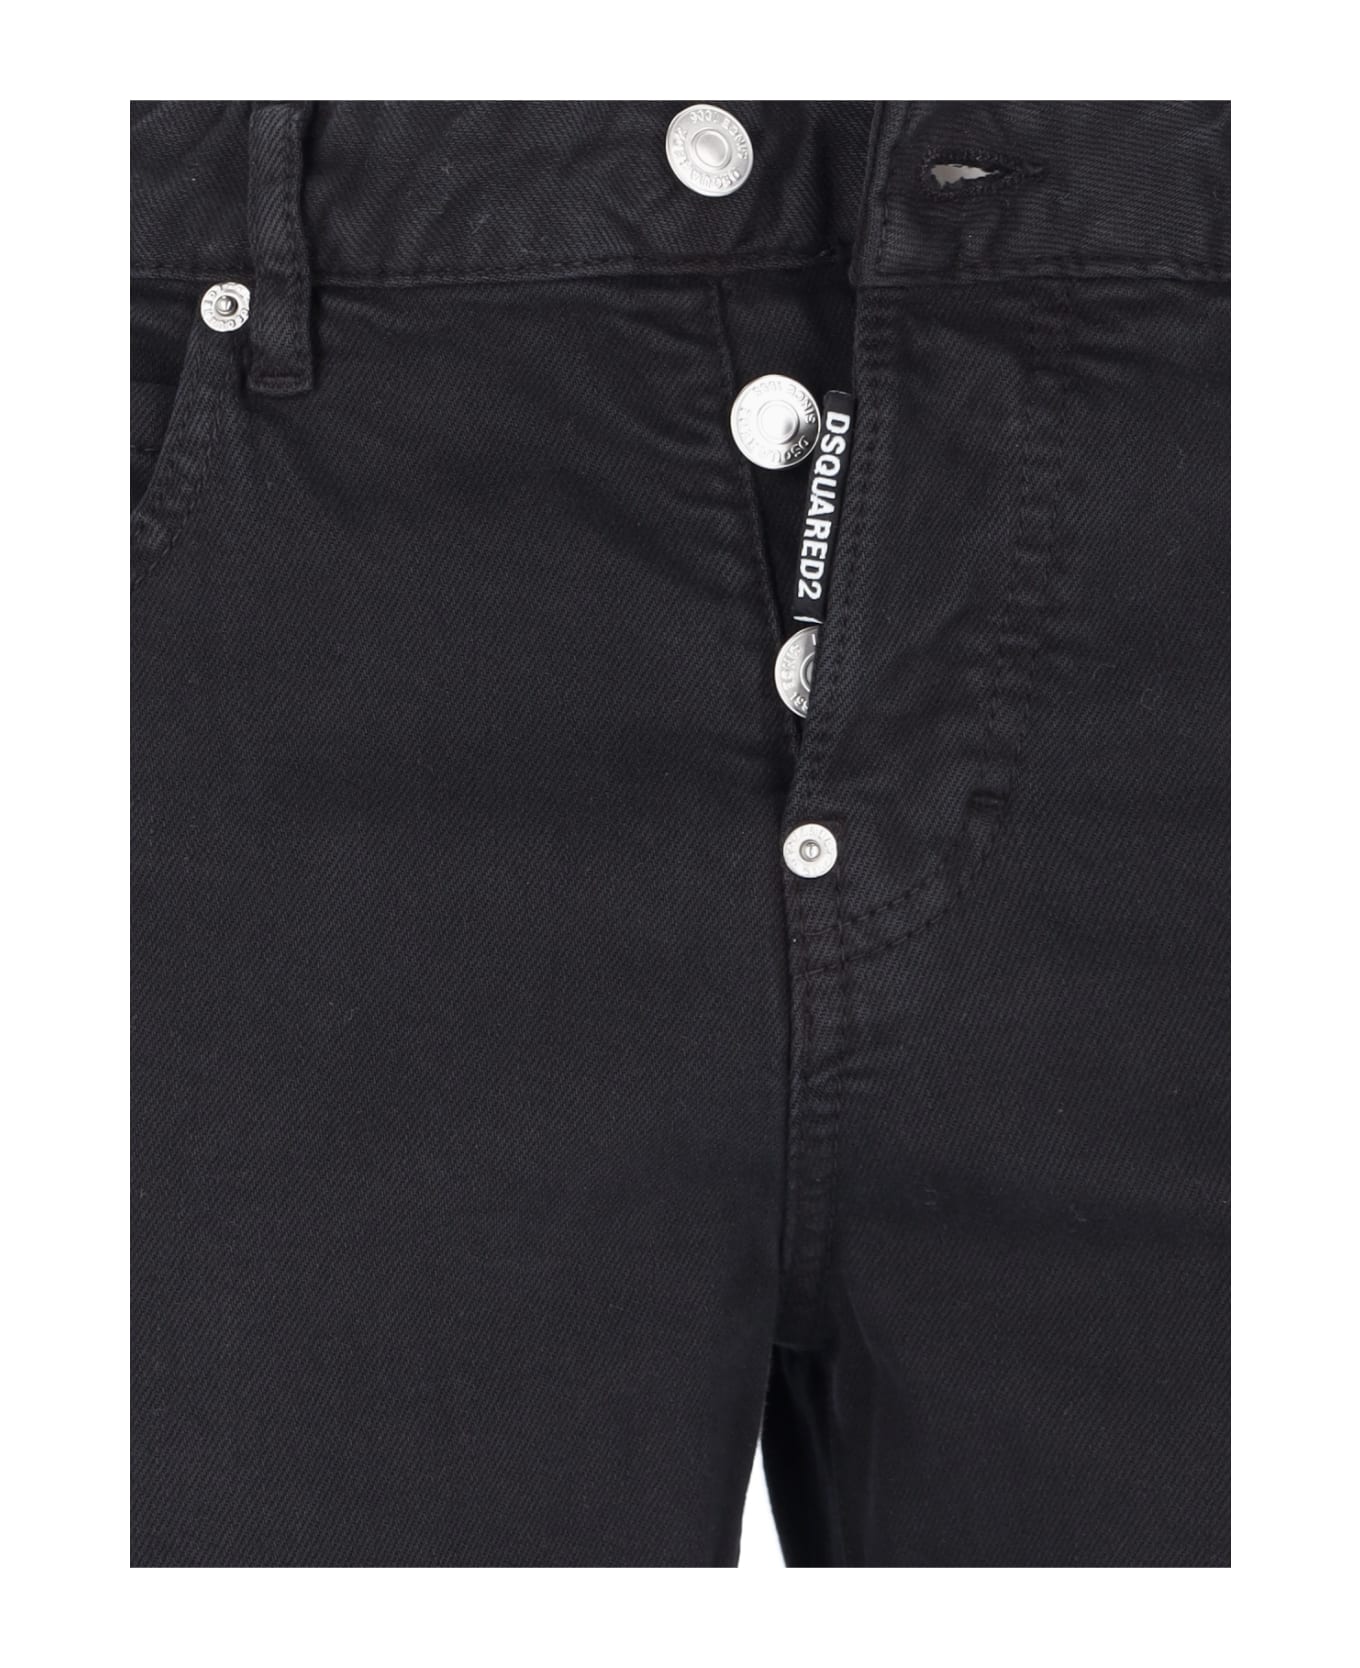 Dsquared2 Skinny Jeans - Black  